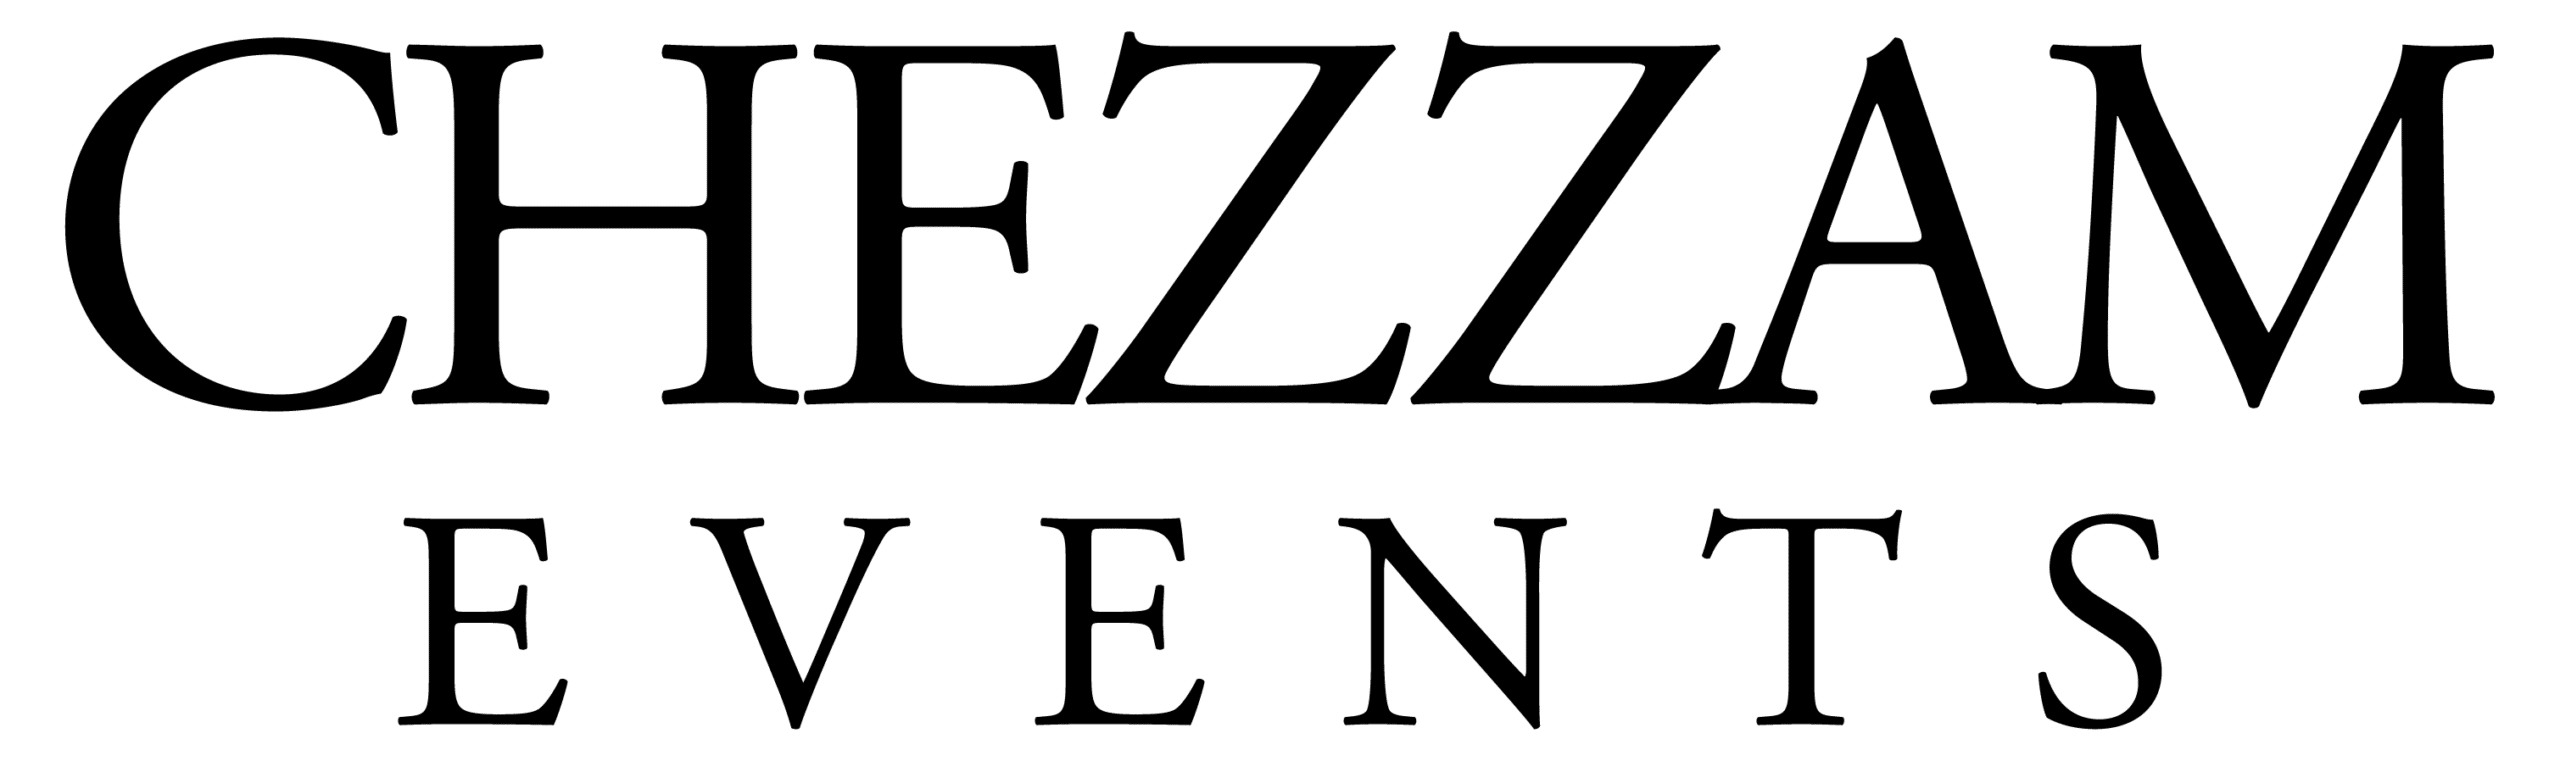 Chezzam Events Logo